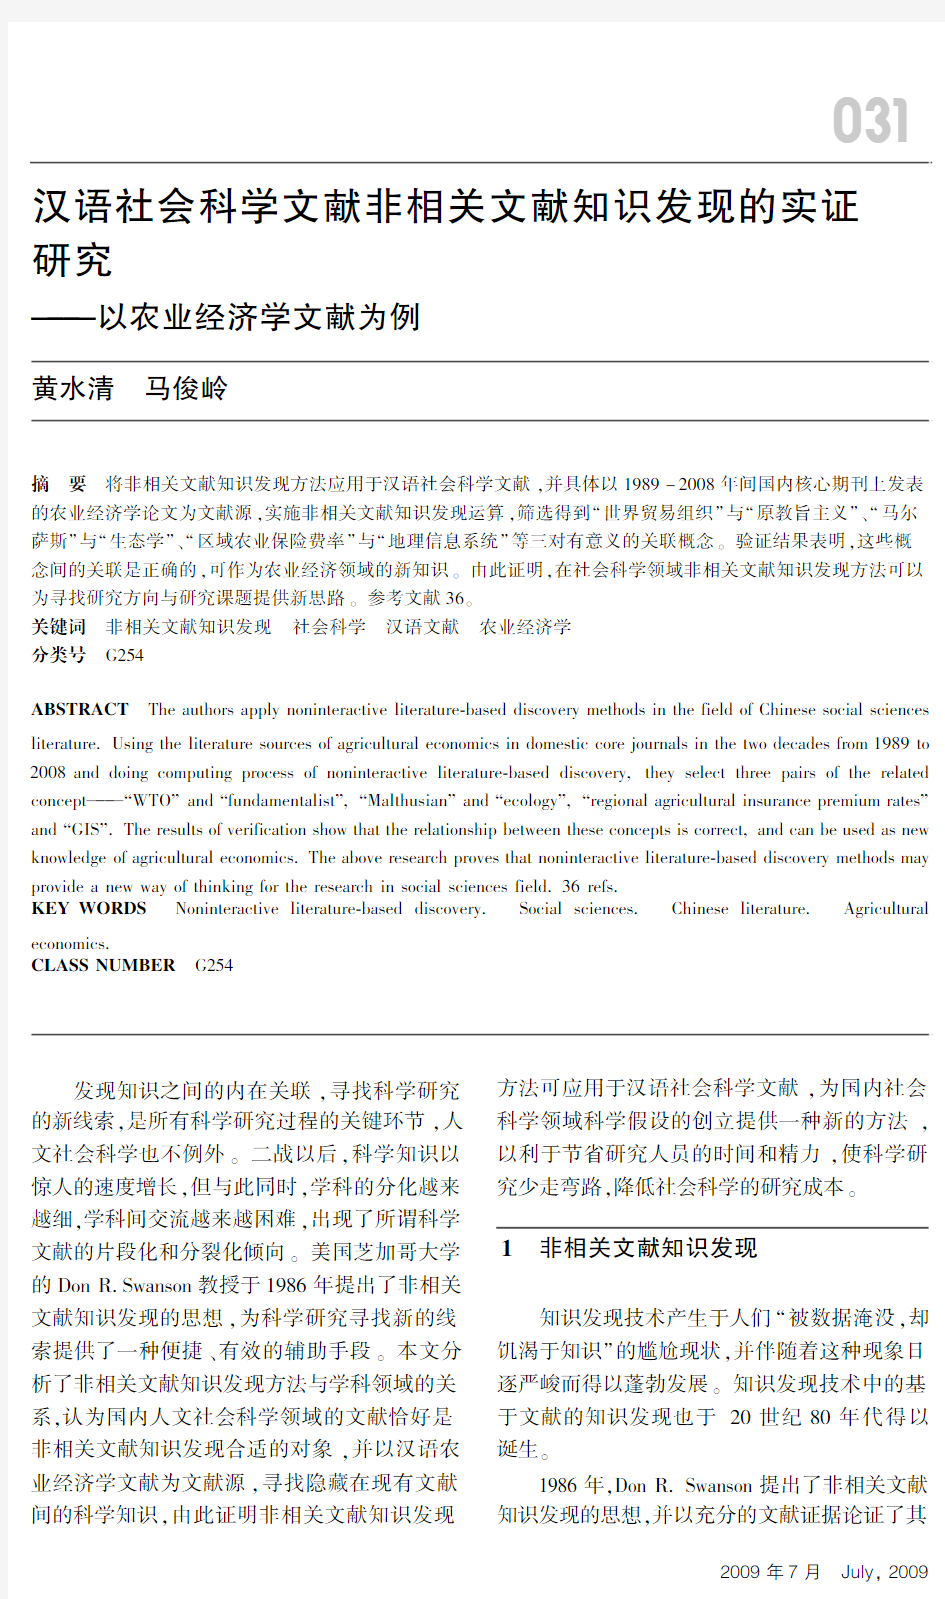 汉语社会科学文献非相关文献知识发现的实证研究探究——以农业经济学文献为例新